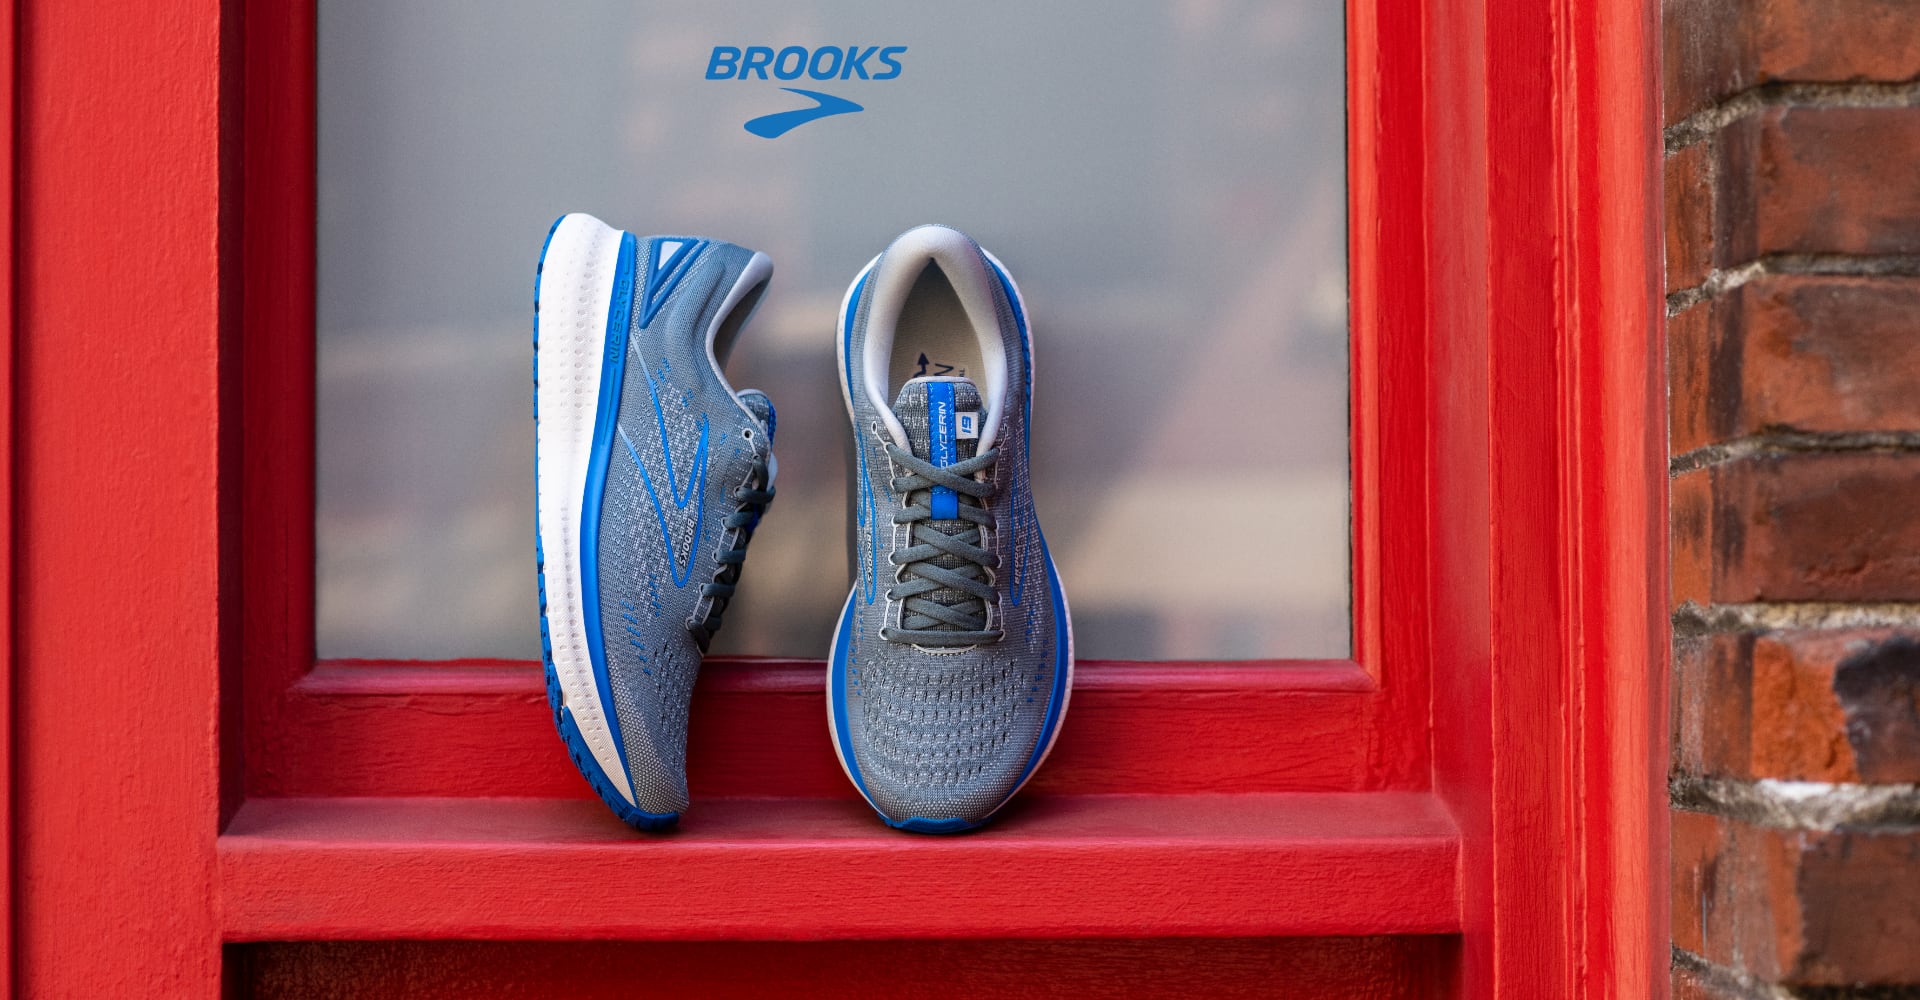 Brooks running shoes lifestyle photo